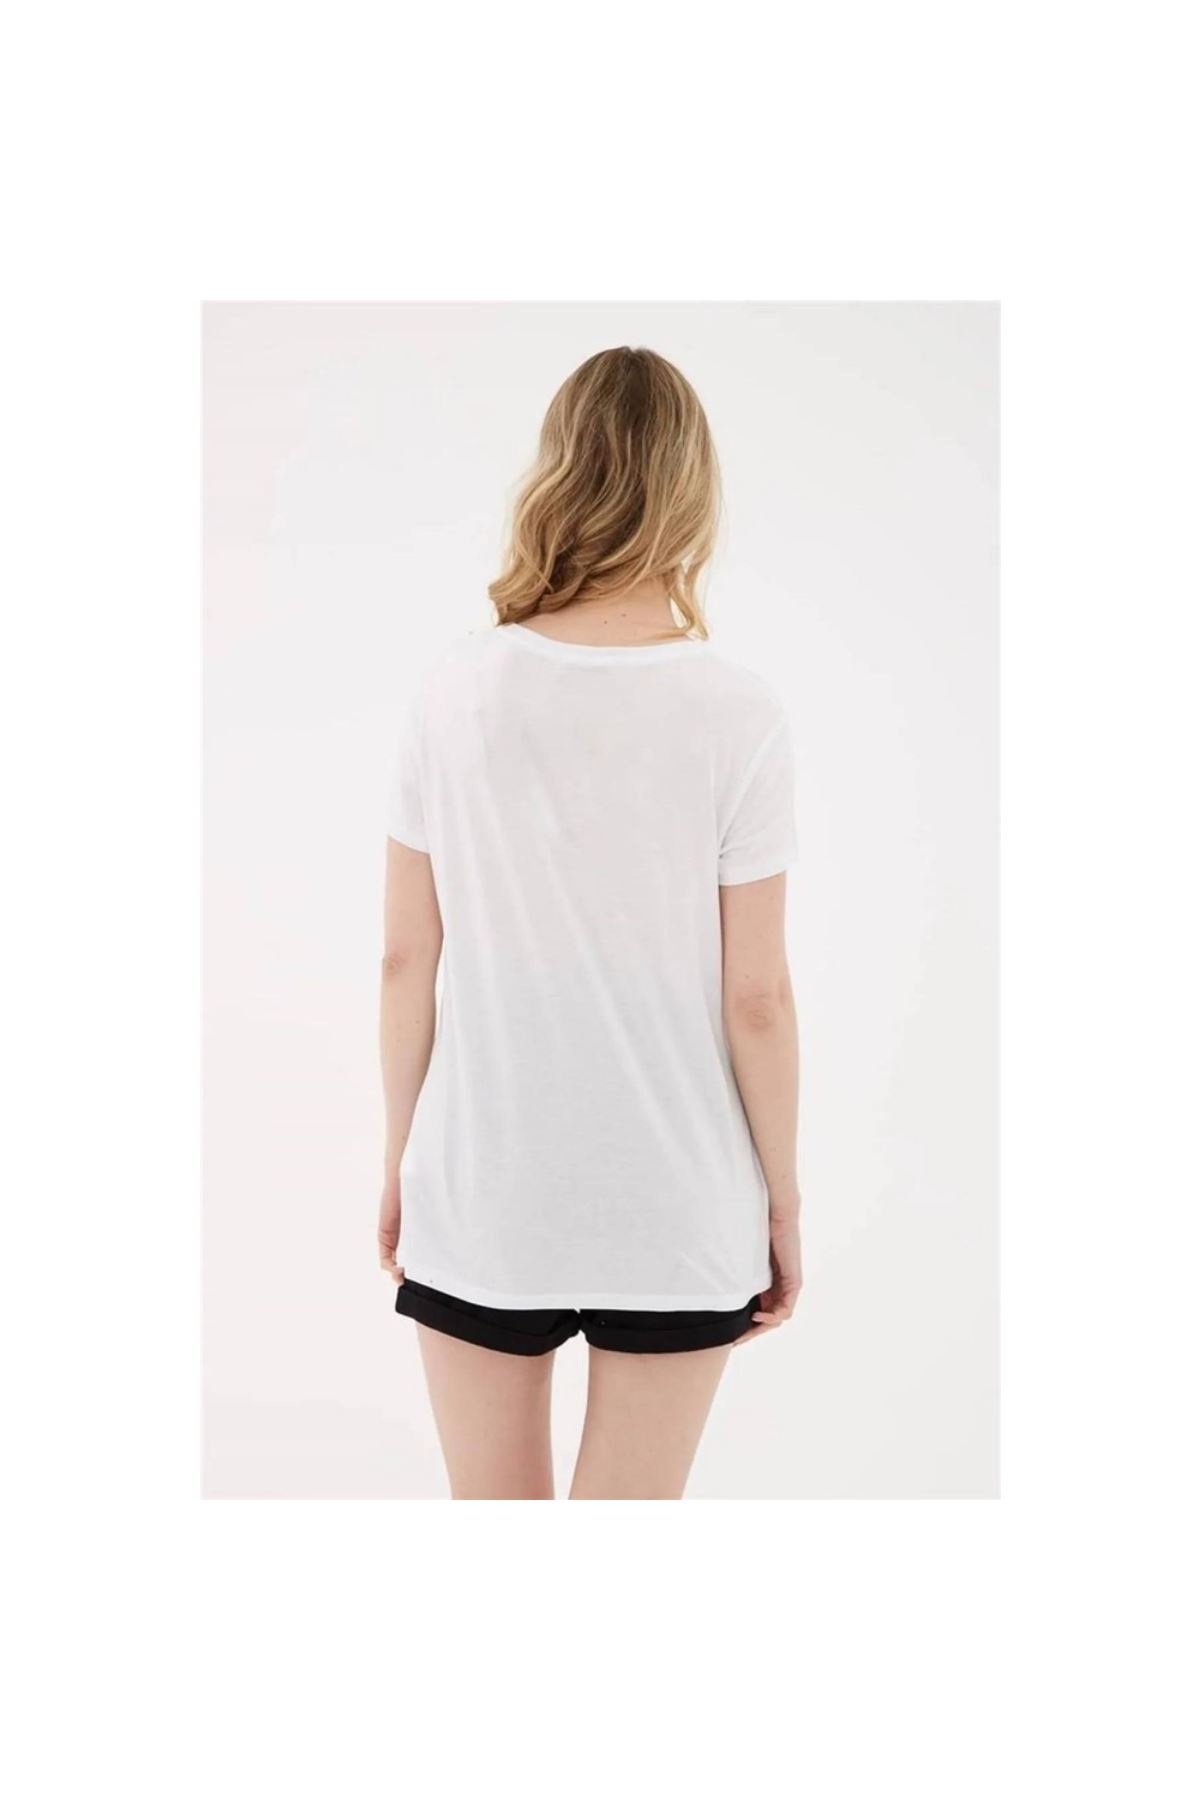 Fashion Friends Kadın Beyaz Tişört - 23Y0448K1